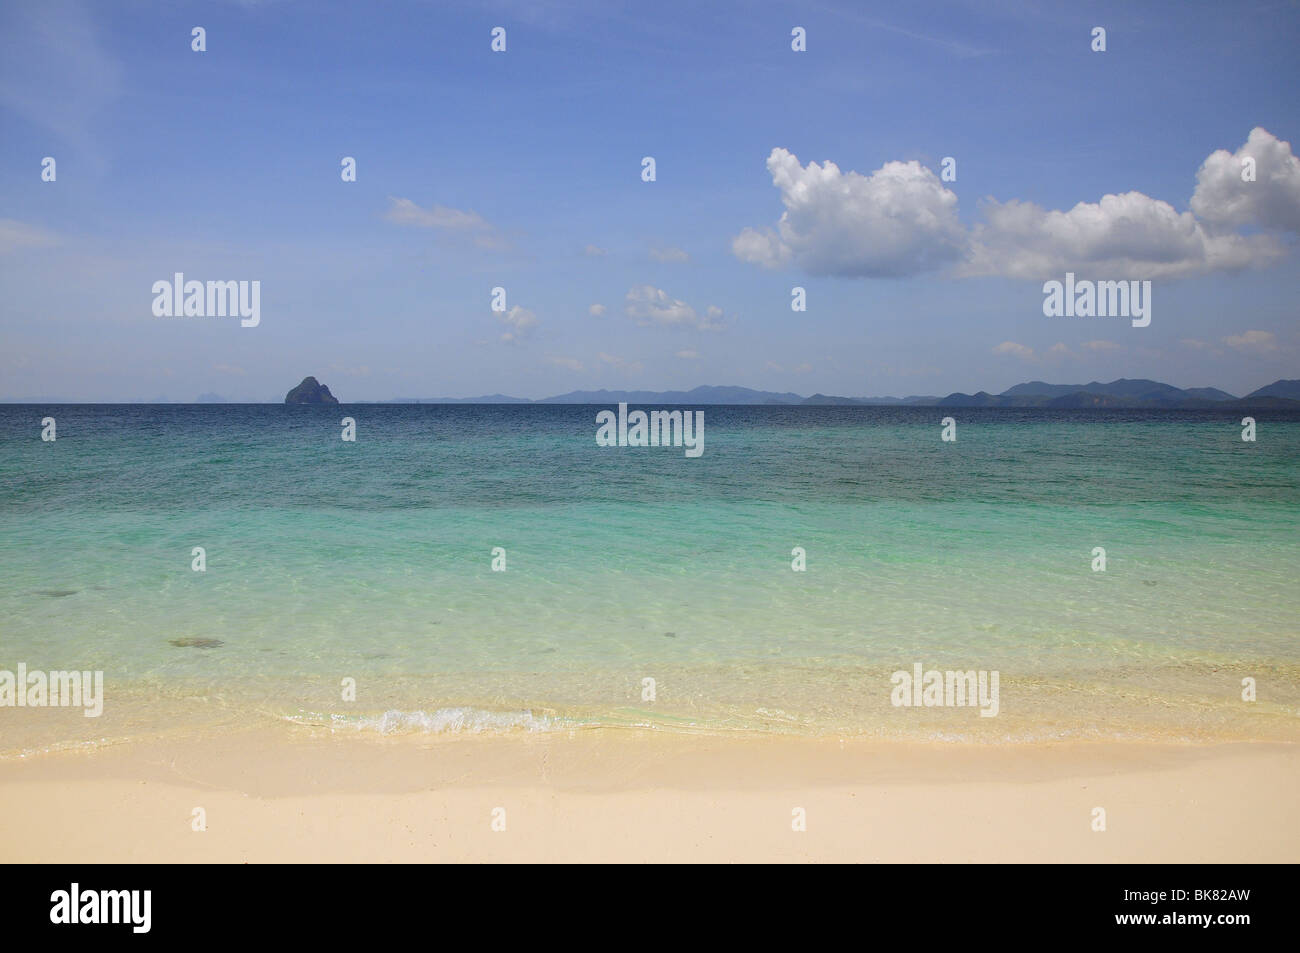 Tropical sandy beach Stock Photo